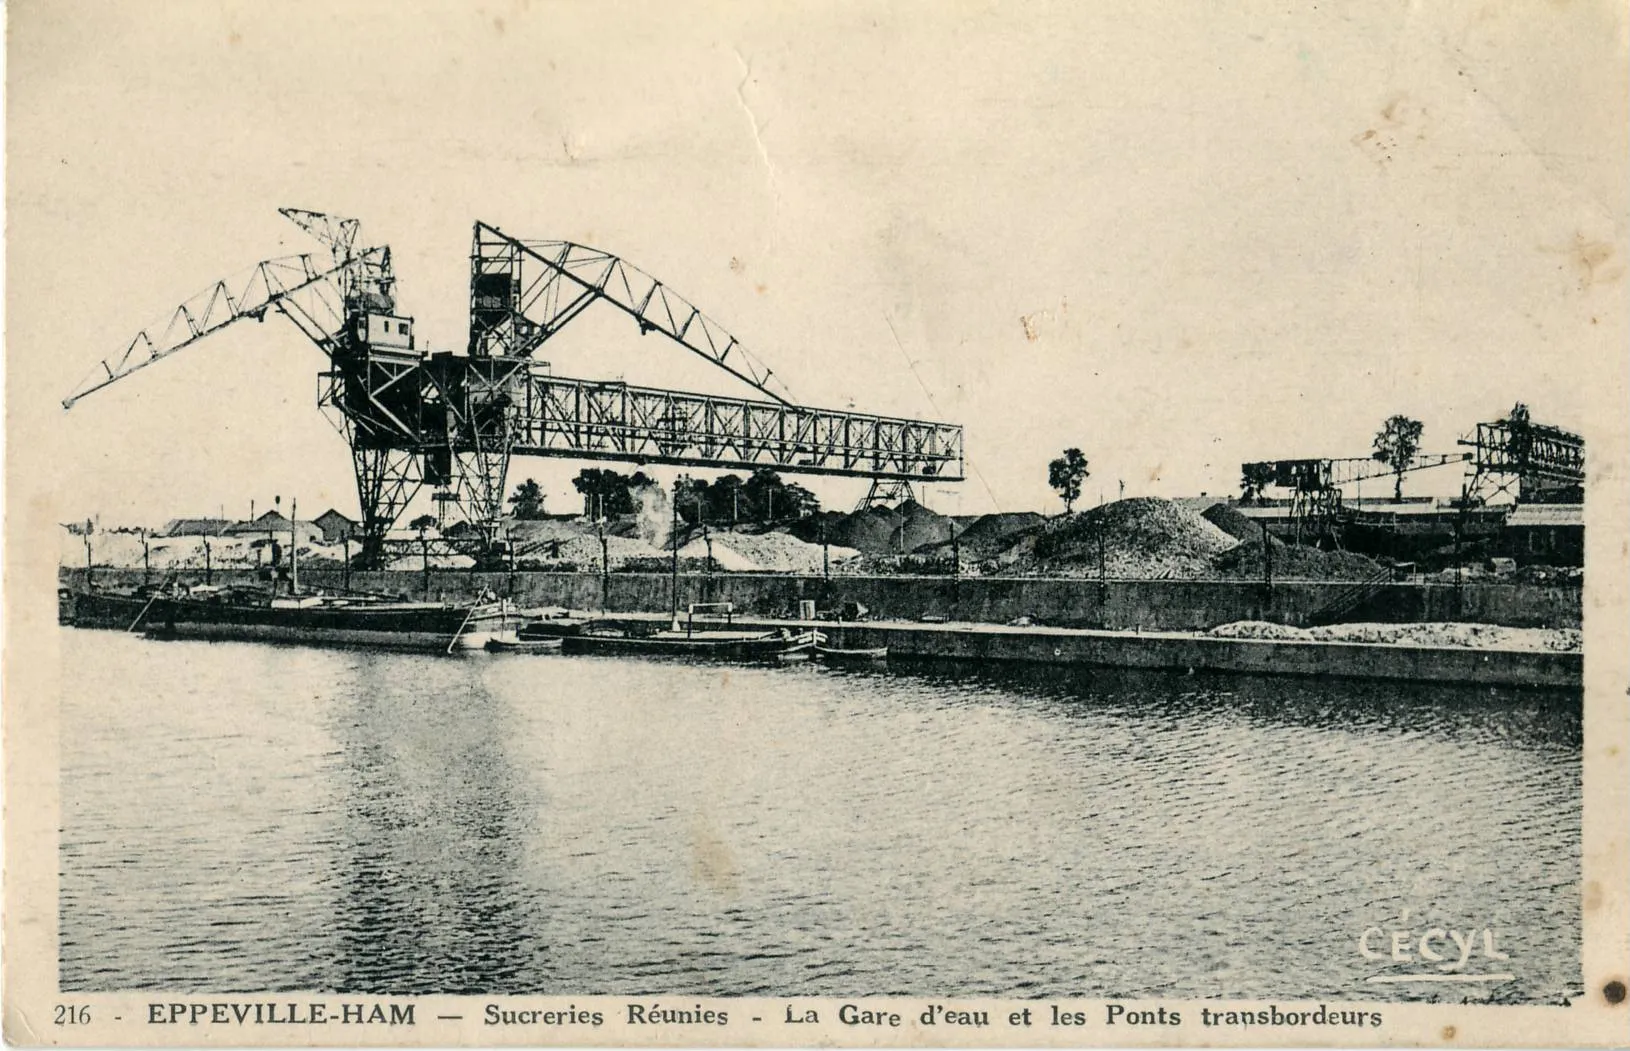 Photo showing: Carte postale ancienne éditée par Cassel-Vasset, sous la marque Cécyl EPPEVILLE-HAM : Sucreries réunies - La Gare d'eau et les Ponts transbordeurs